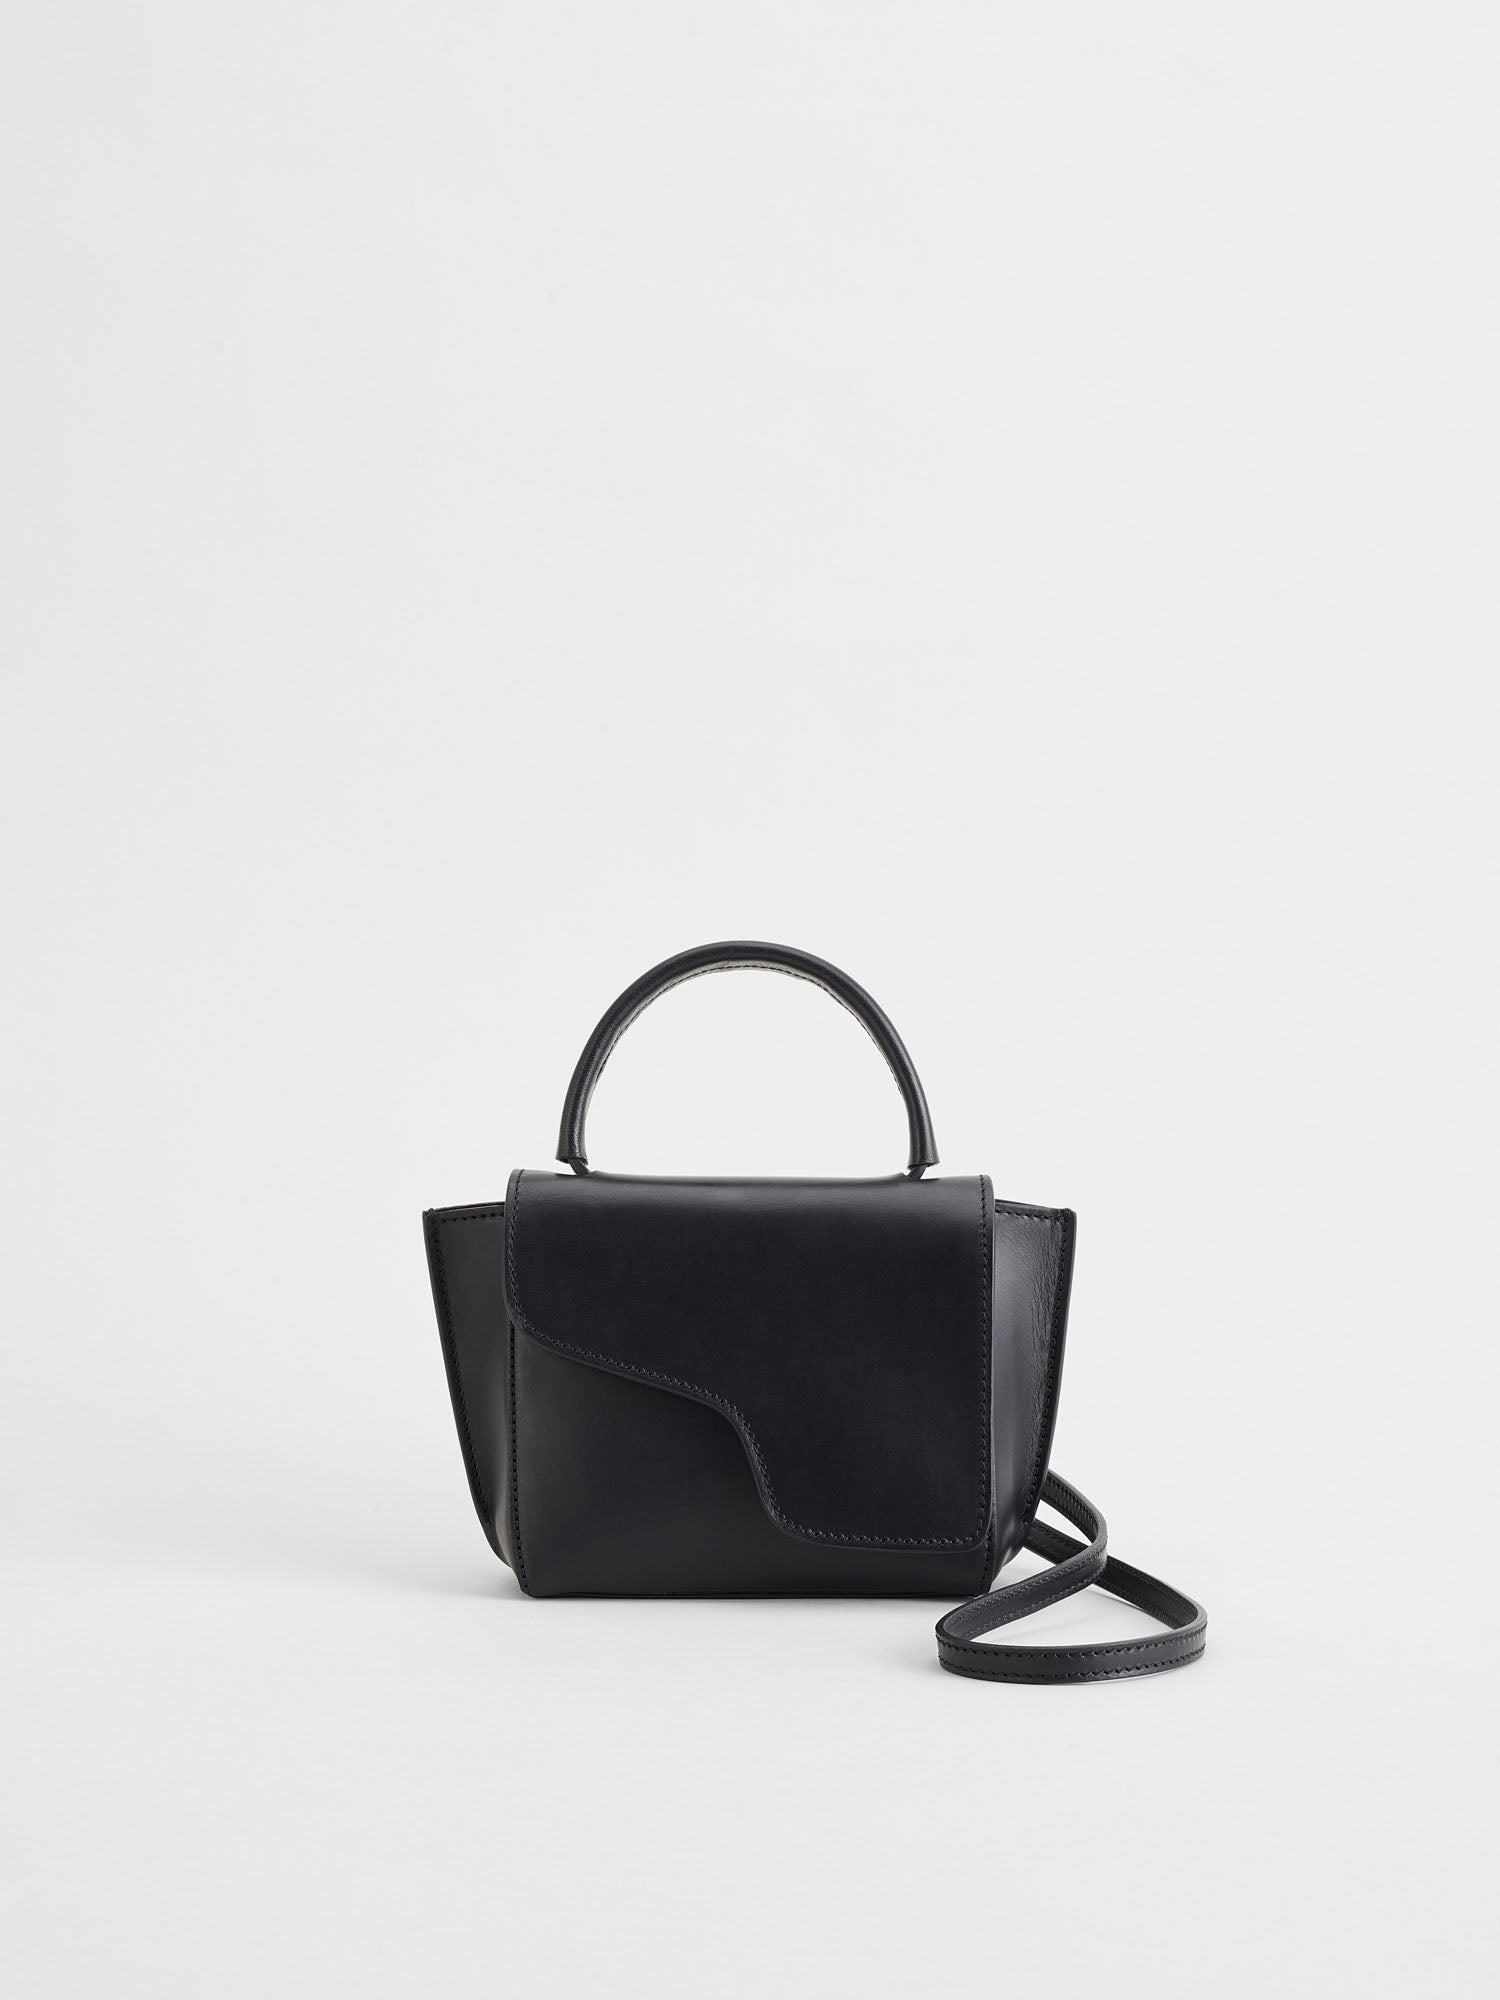 Montalcino Black Leather Mini handbag